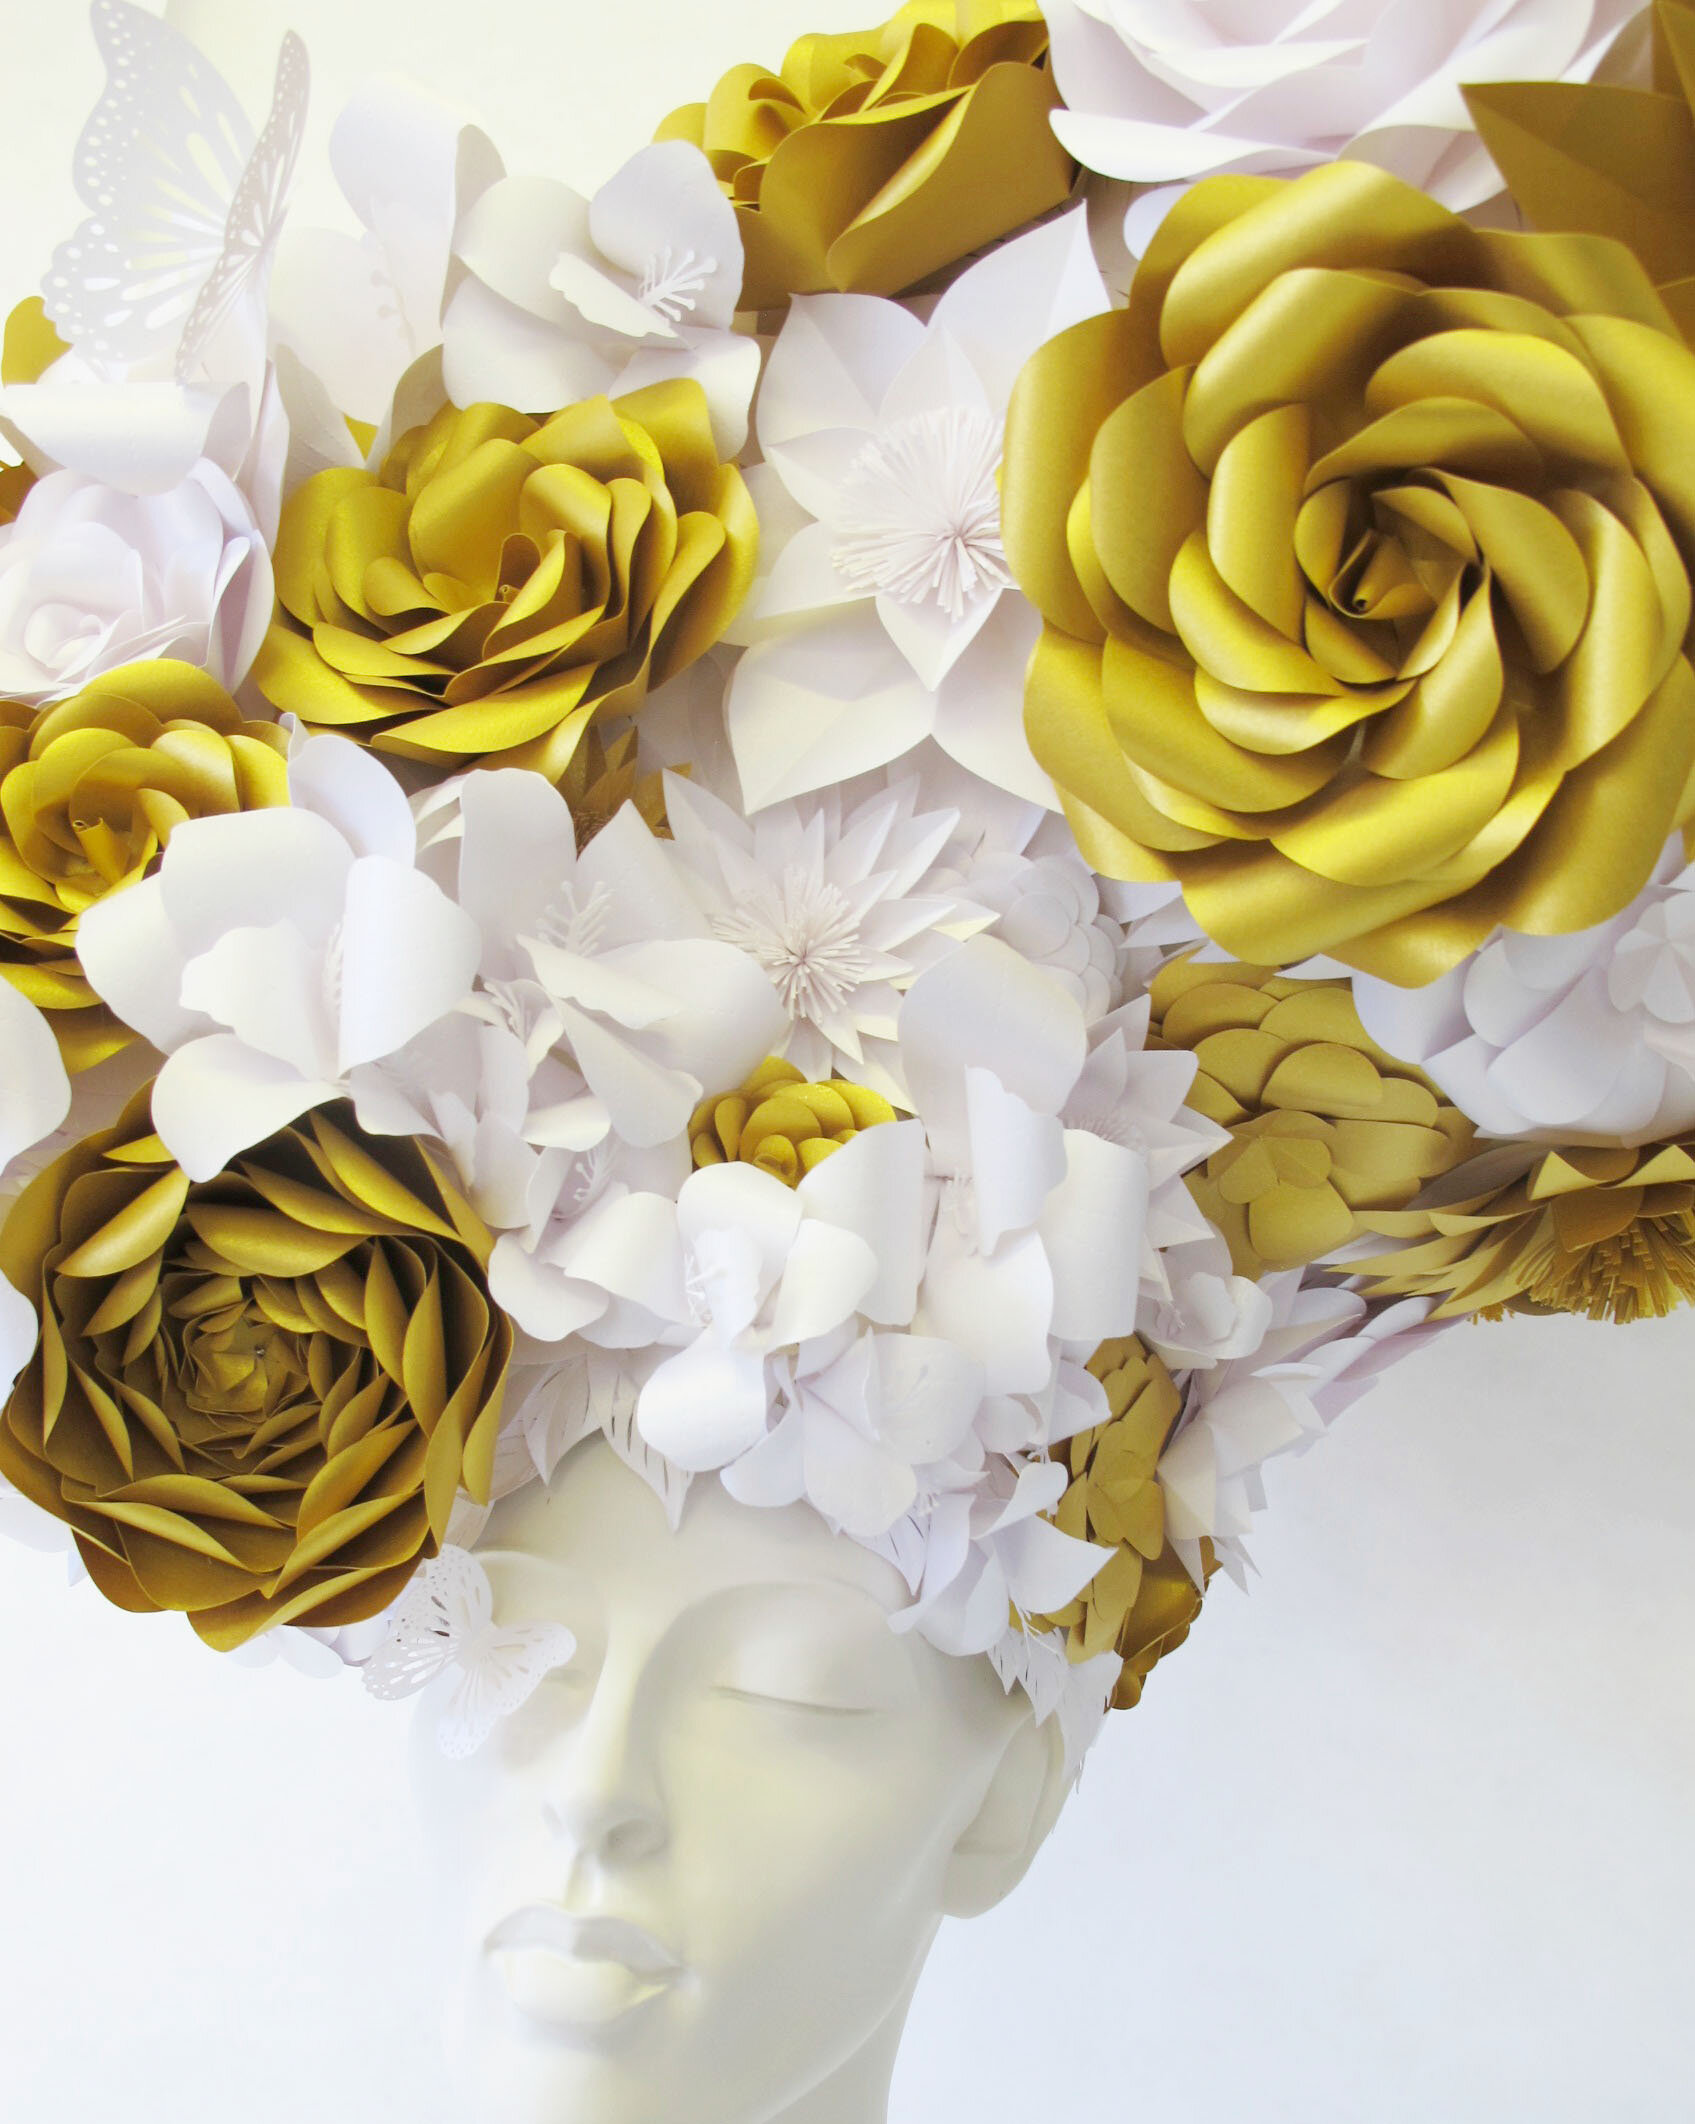 themill-headpiece-paper-flowers-zoe-bradley-paperart-flowers-2.jpg